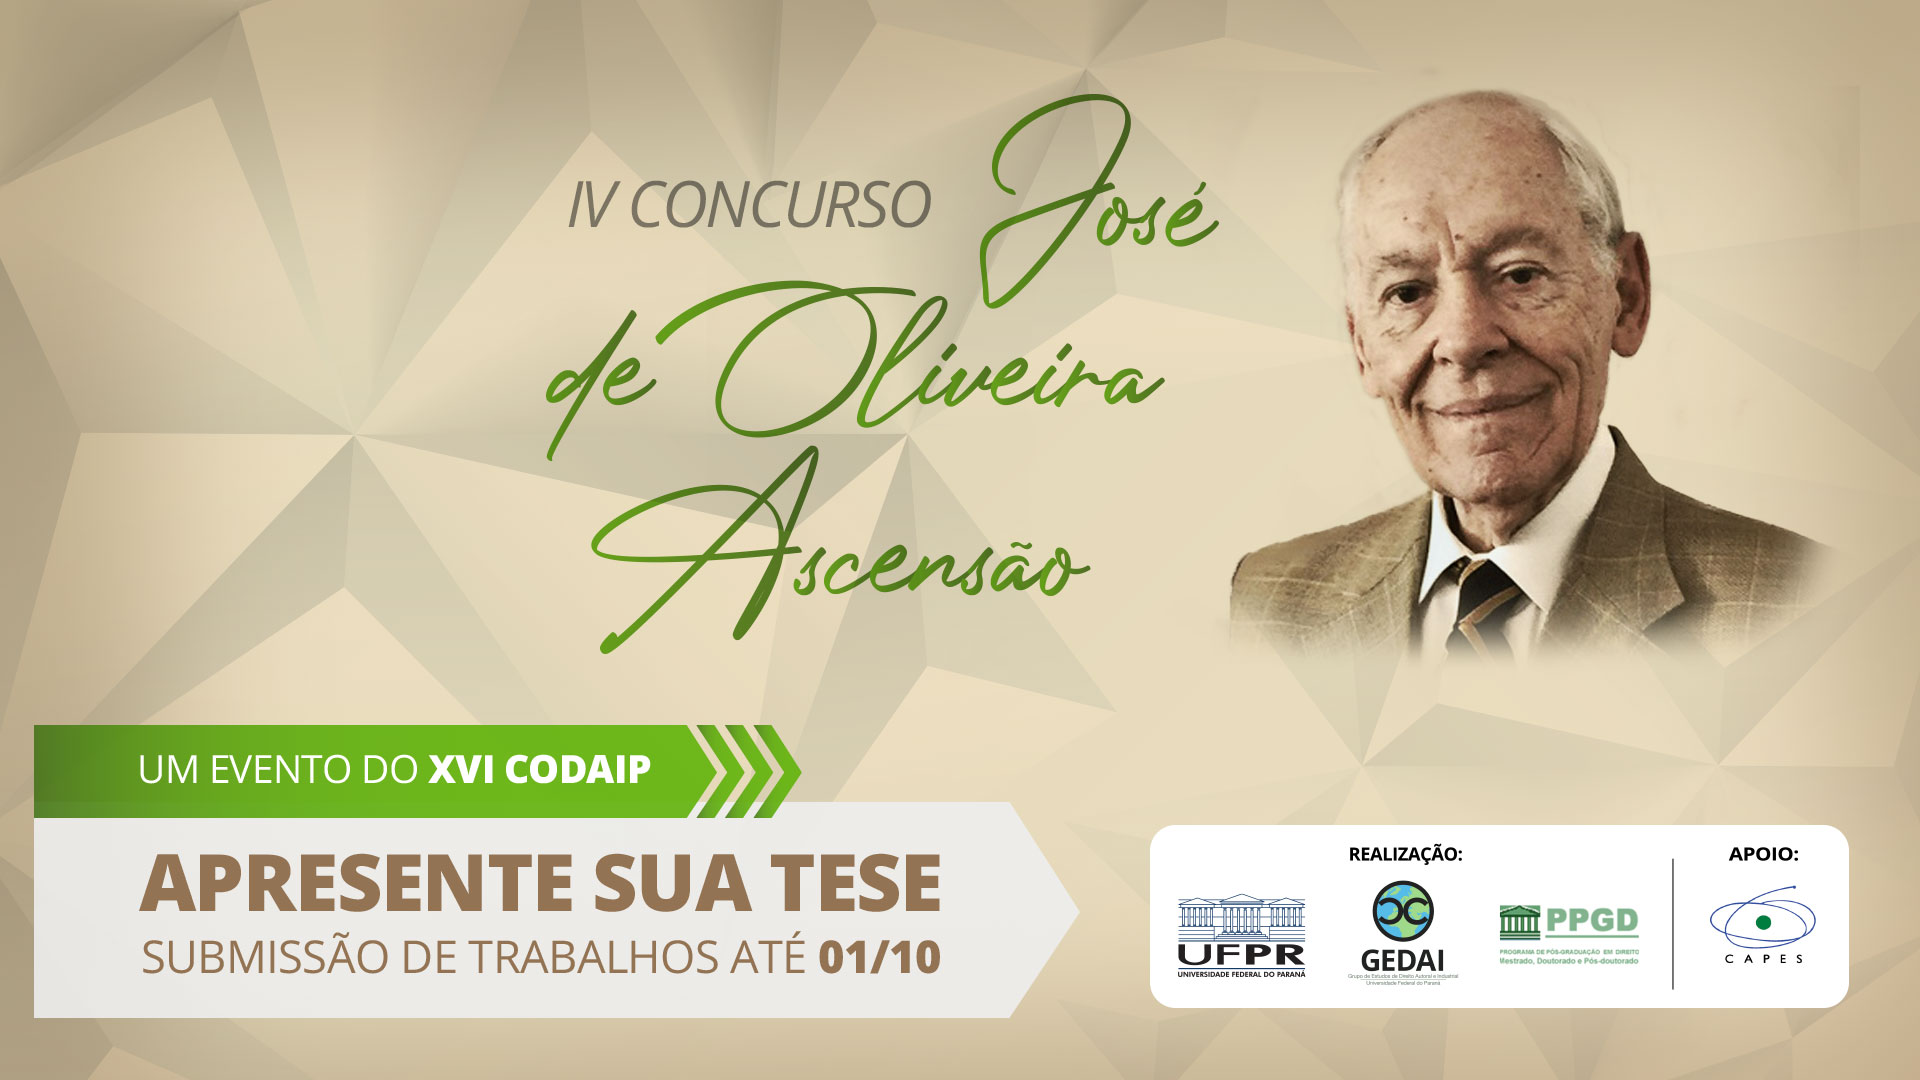 IV Concurso Prof. Dr. José de Oliveira Ascensão – Apresente sua tese no CODAIP